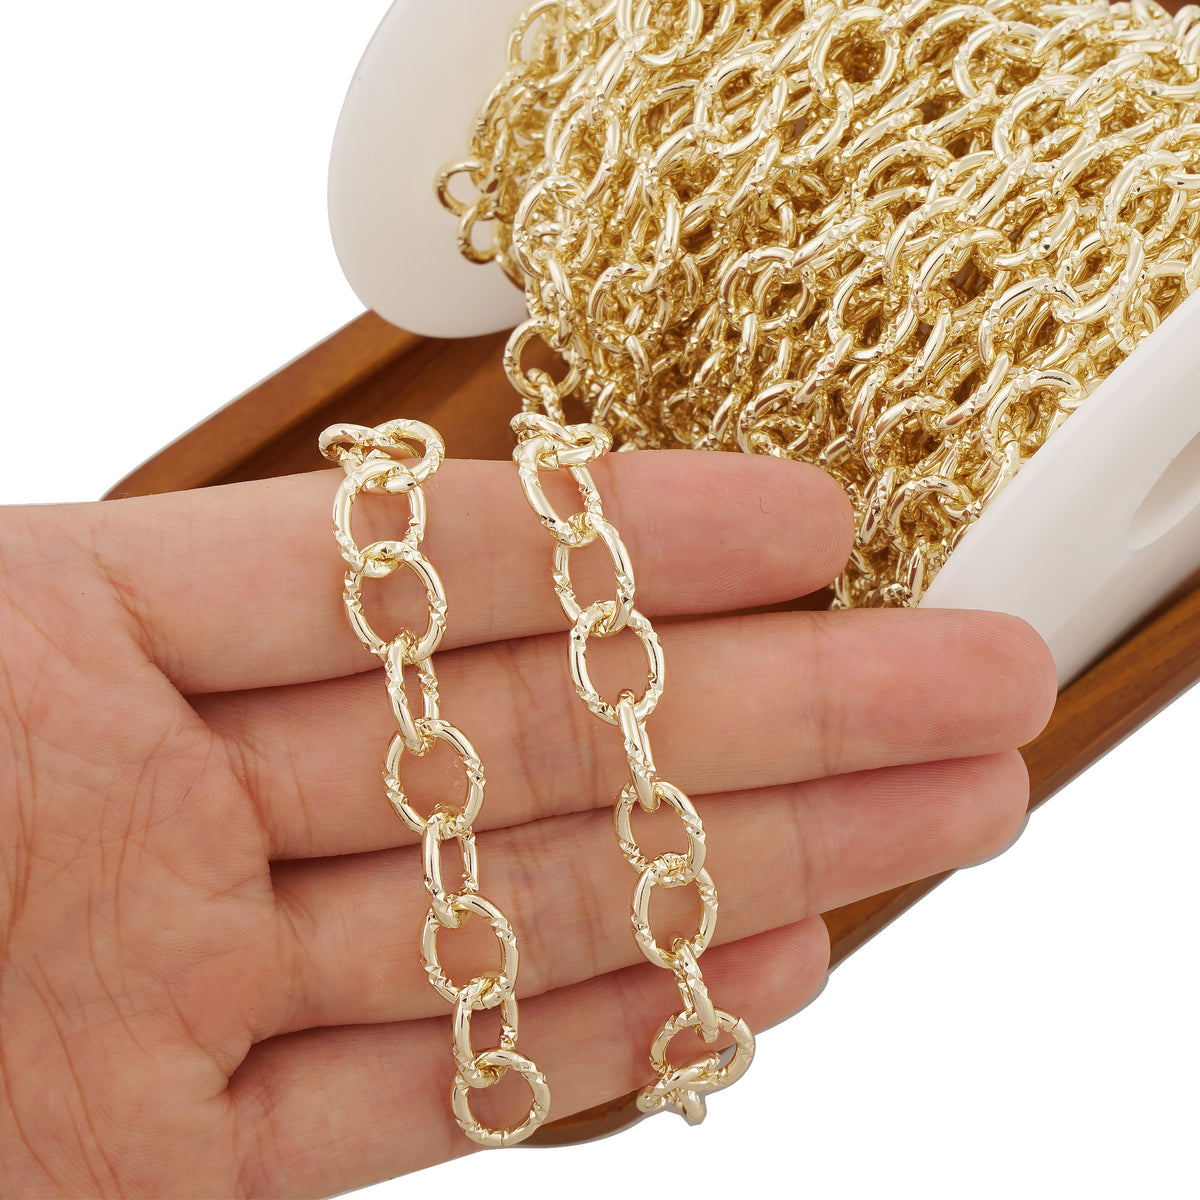 Gold Bracelets for Women - Lane Woods 14K Gold Plated Wide Cuban Curb Link Bracelet